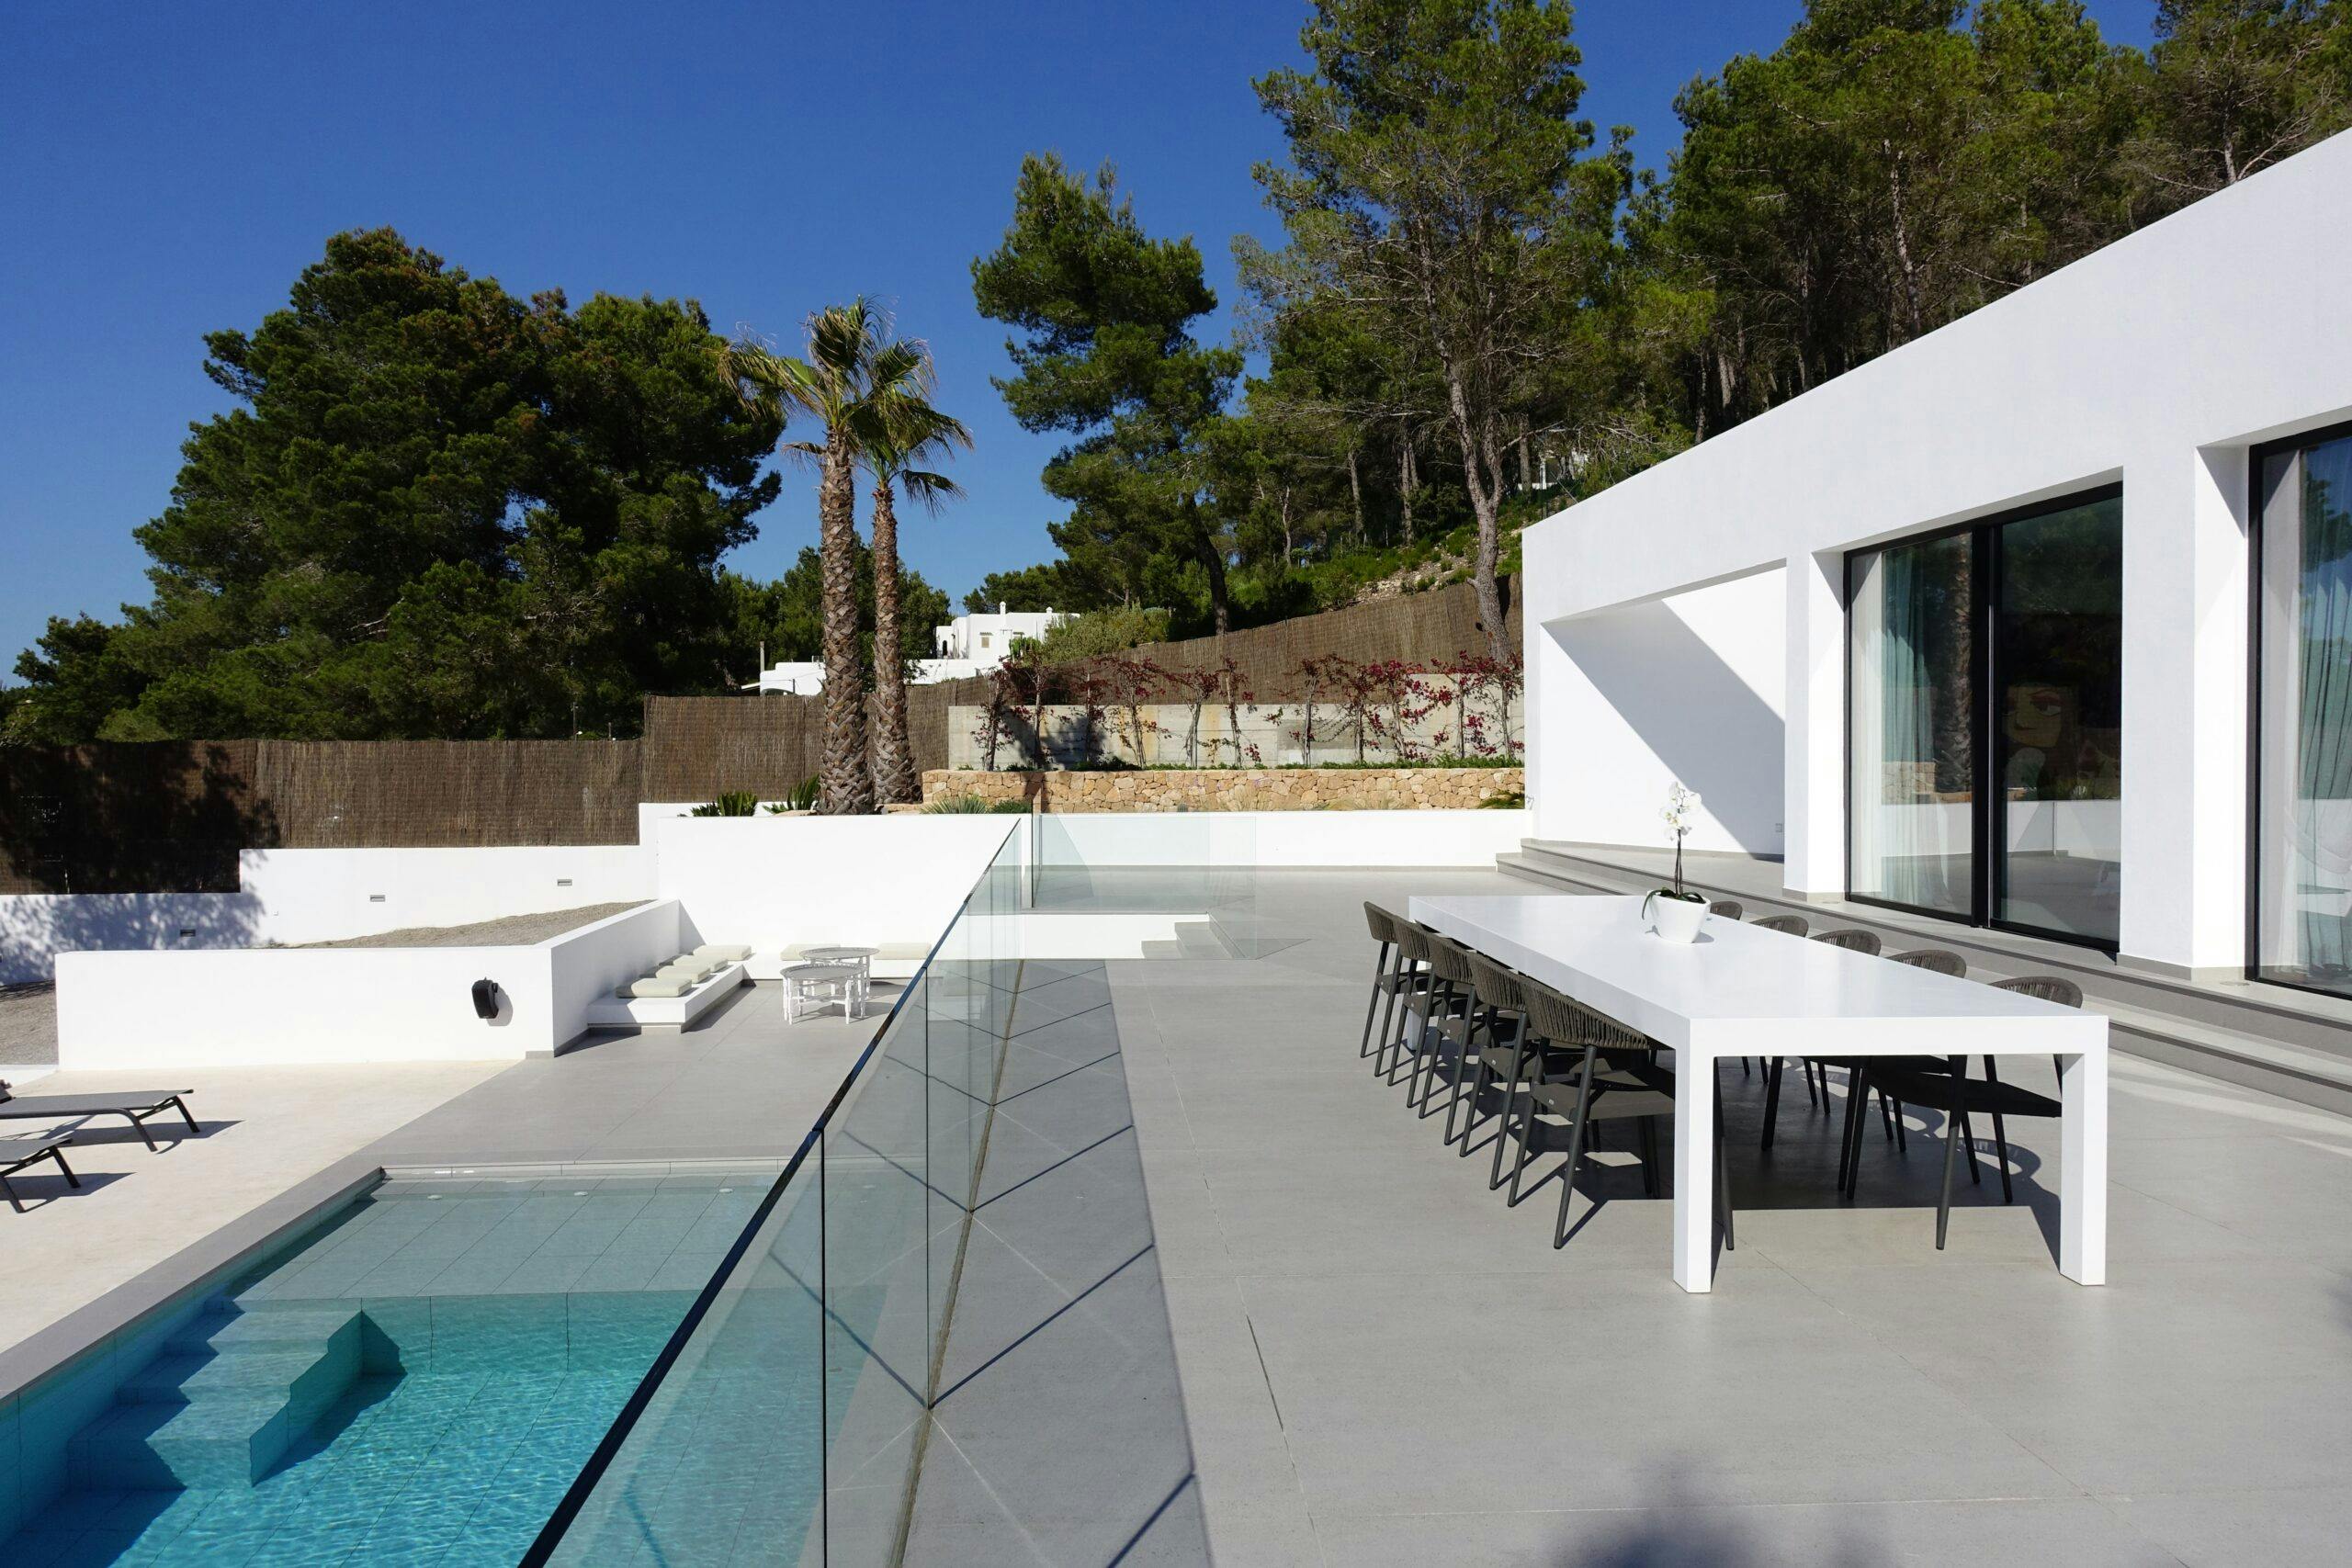 Numero immagine 33 della sezione corrente di Case Study Villa Omnia a Ibiza realizzata con Dekton® e Silestone® by Cosentino di Cosentino Italia